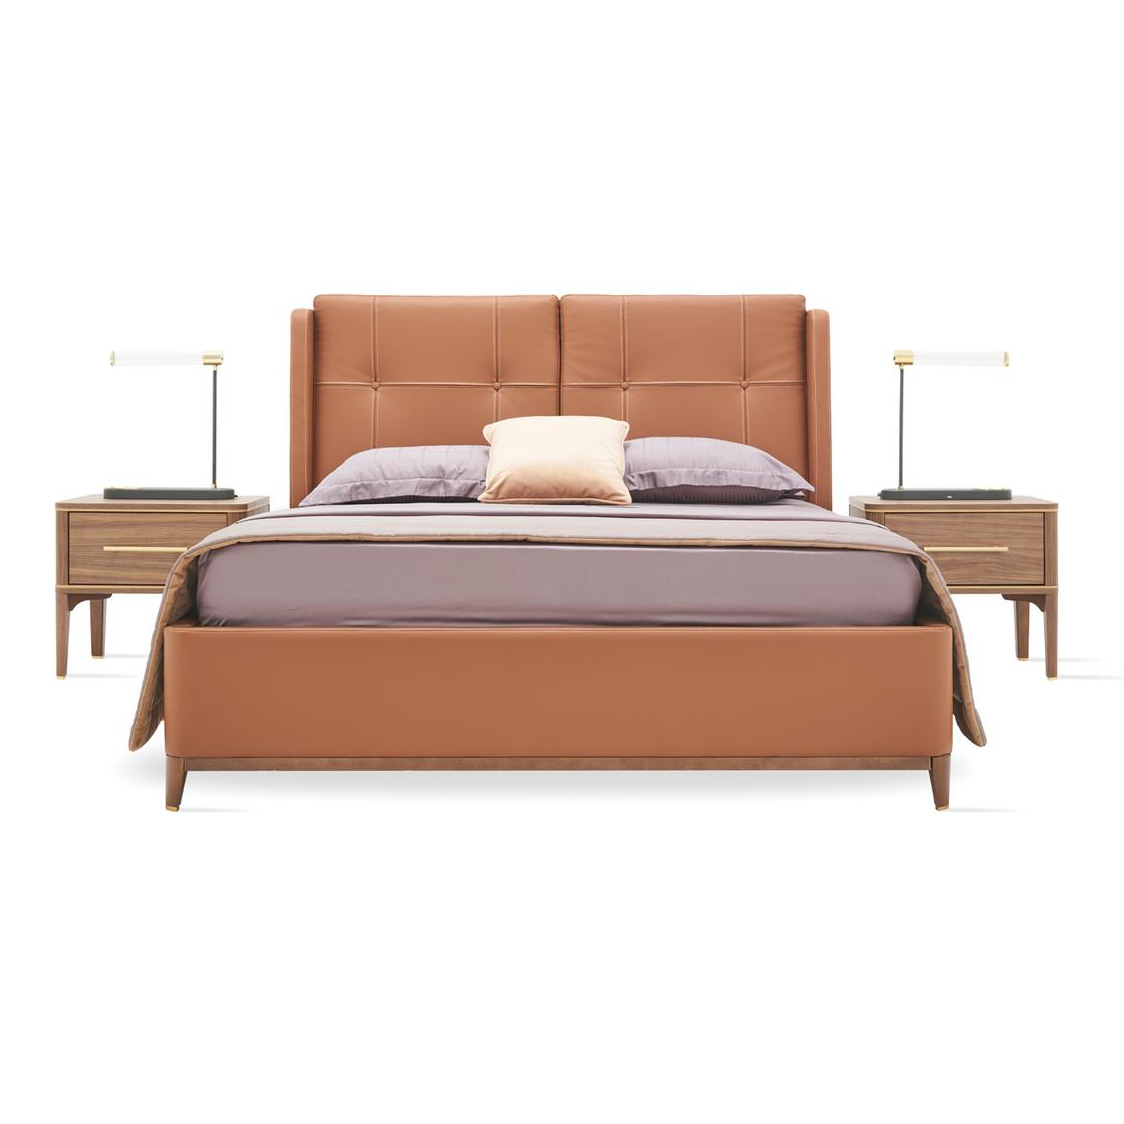 Кровать Enza Home Raum, двуспальная, с подъемным механизмом, 180х200 см